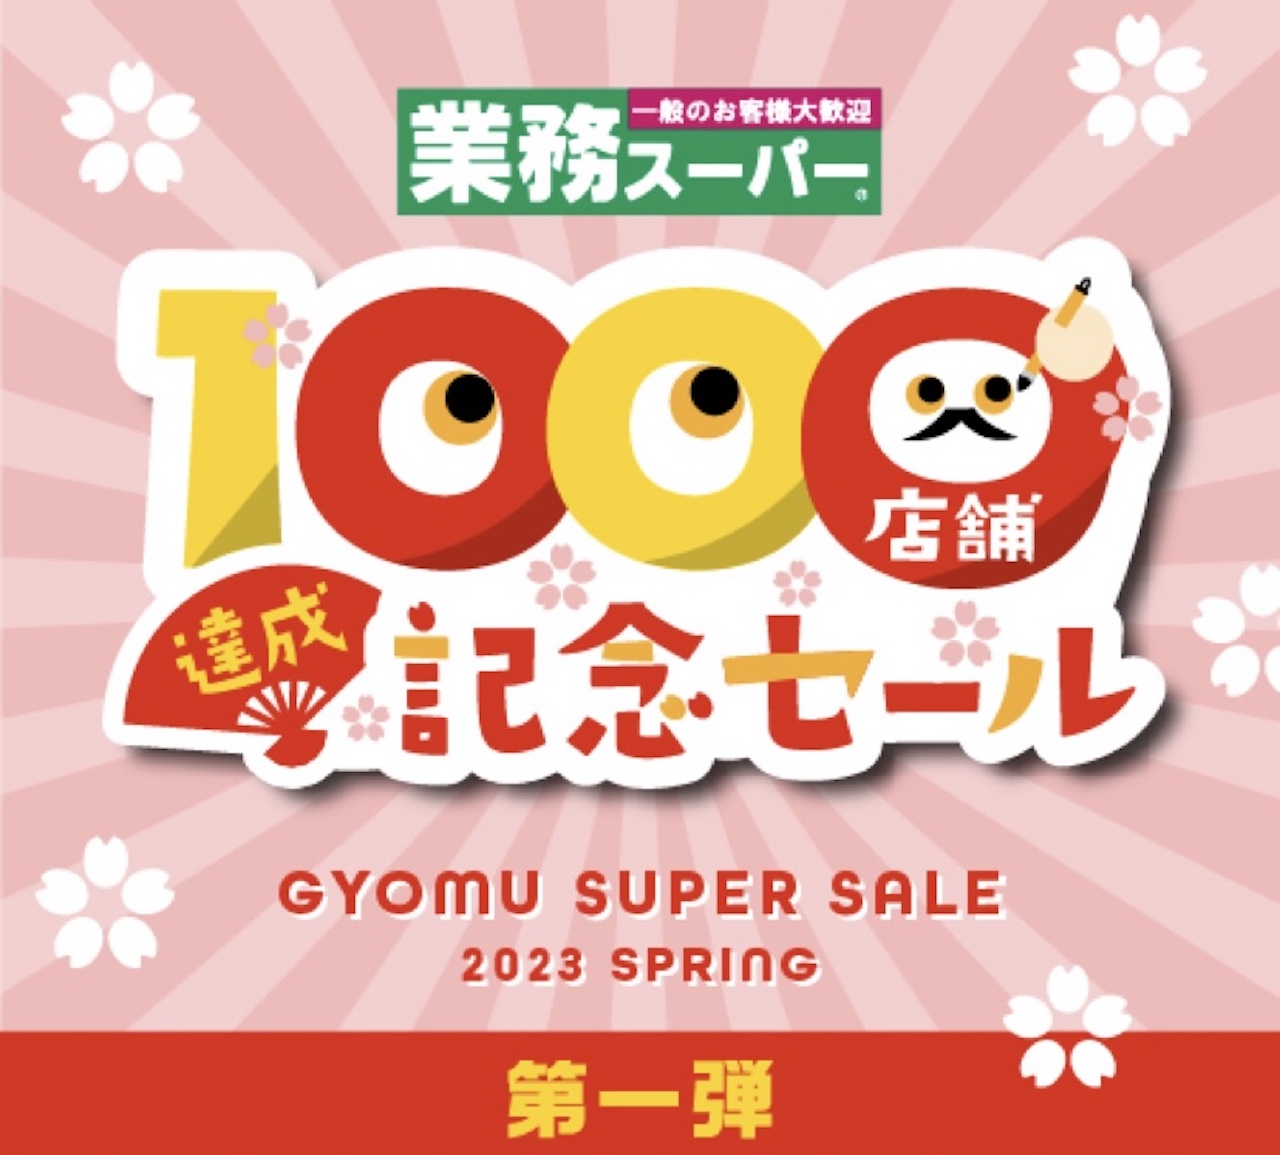 【業務スーパー】1000店舗達成記念セール！3月1日(水)から